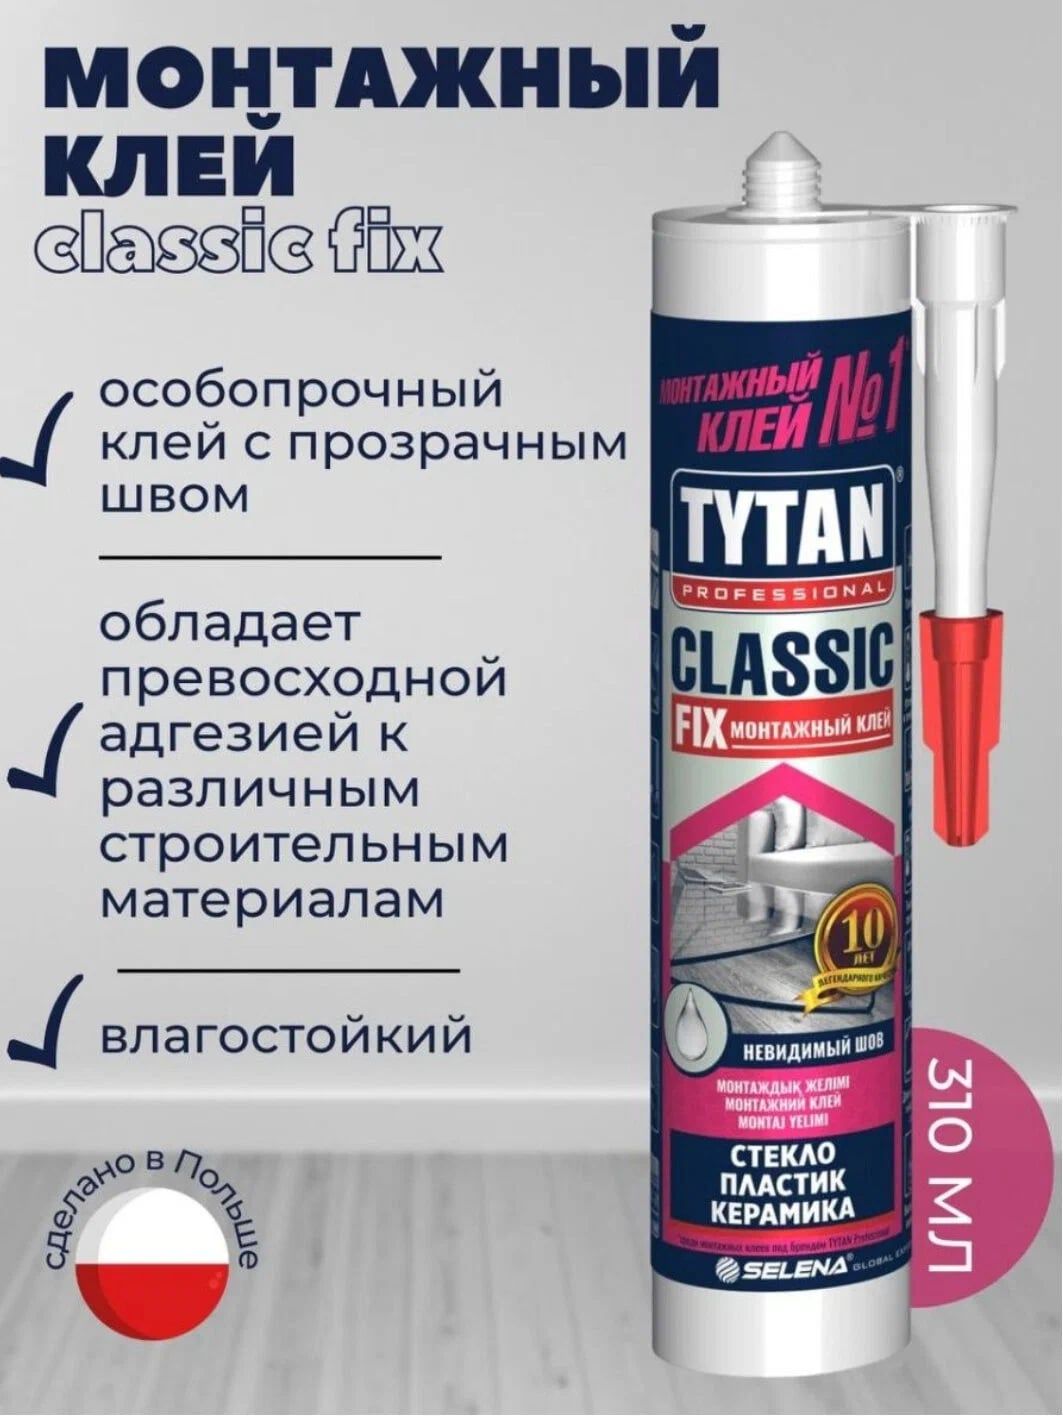 Tytan classic fix прозрачный. Клей монтажный каучуковый Tytan Classic Fix прозрачный 310 мл. Tytan professional Classic Fix монтажный клей. Tytan professional Classic Fix, 310 мл. Клей монтажный Tytan CLASSICIX, 310мл.